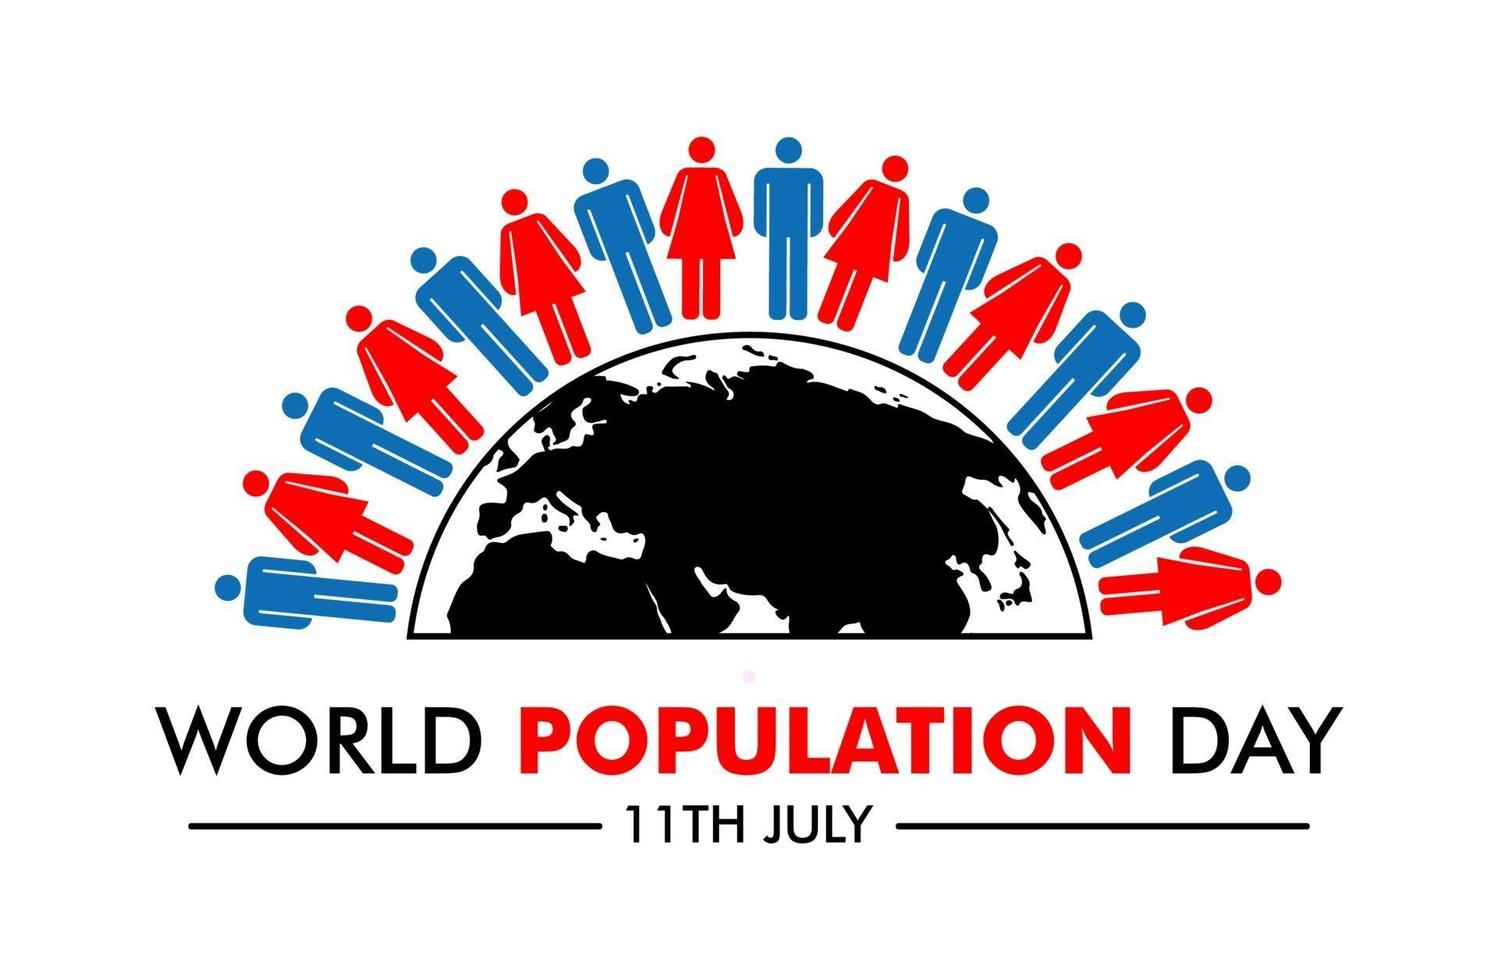 imagen vectorial del día mundial de la población 11 de julio vector